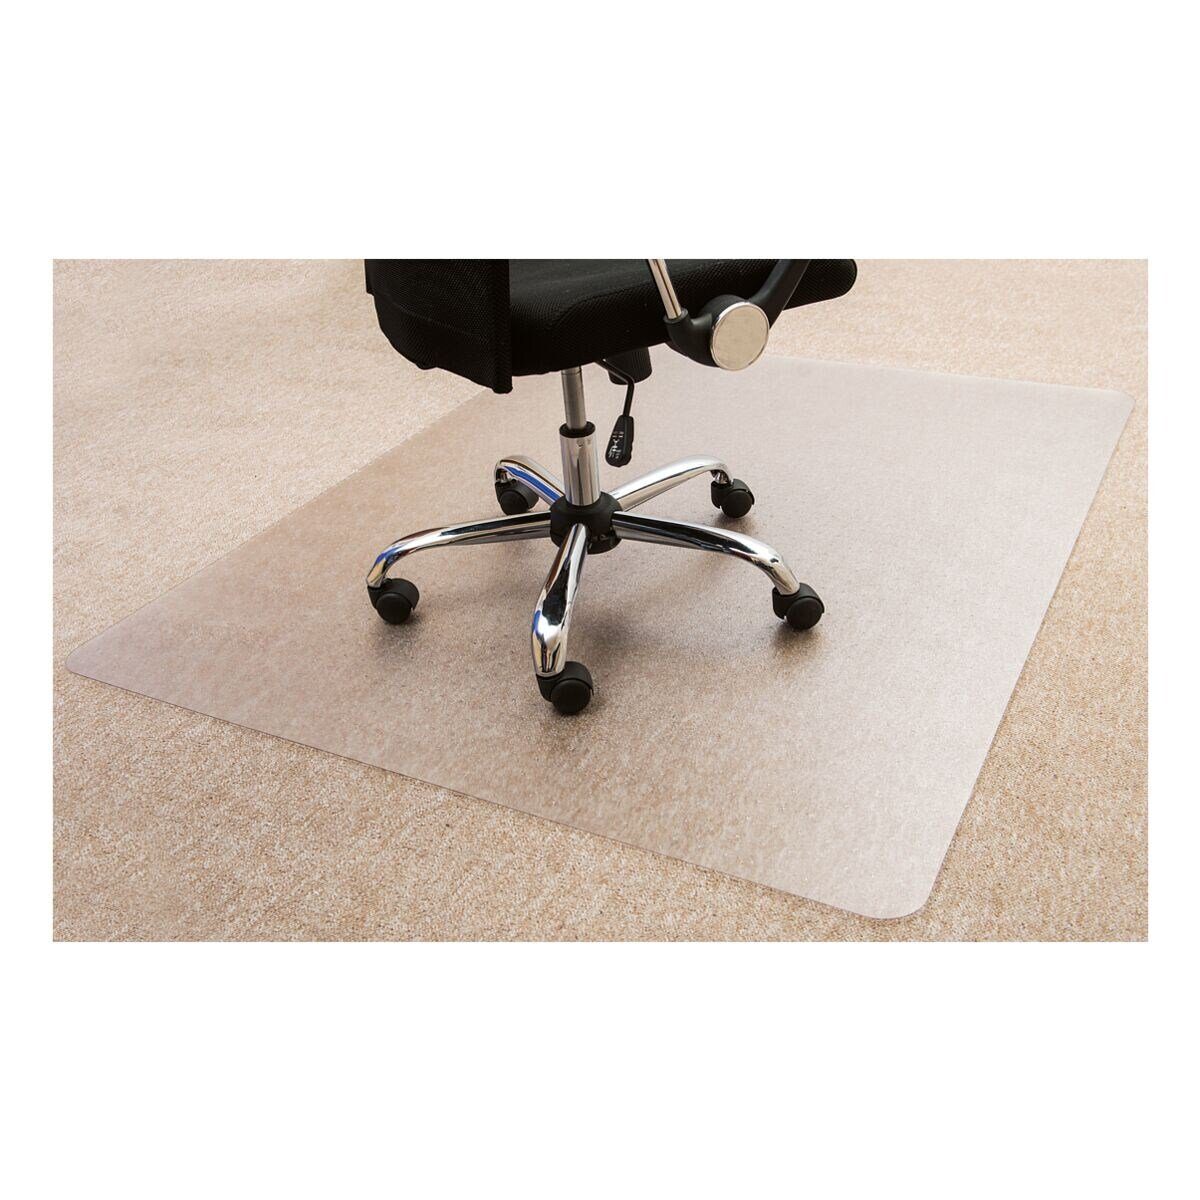 Otto Office Budget Office Budget für rechteckig, mittelflorigen Bodenschutzmatte, recycelbar Teppichboden